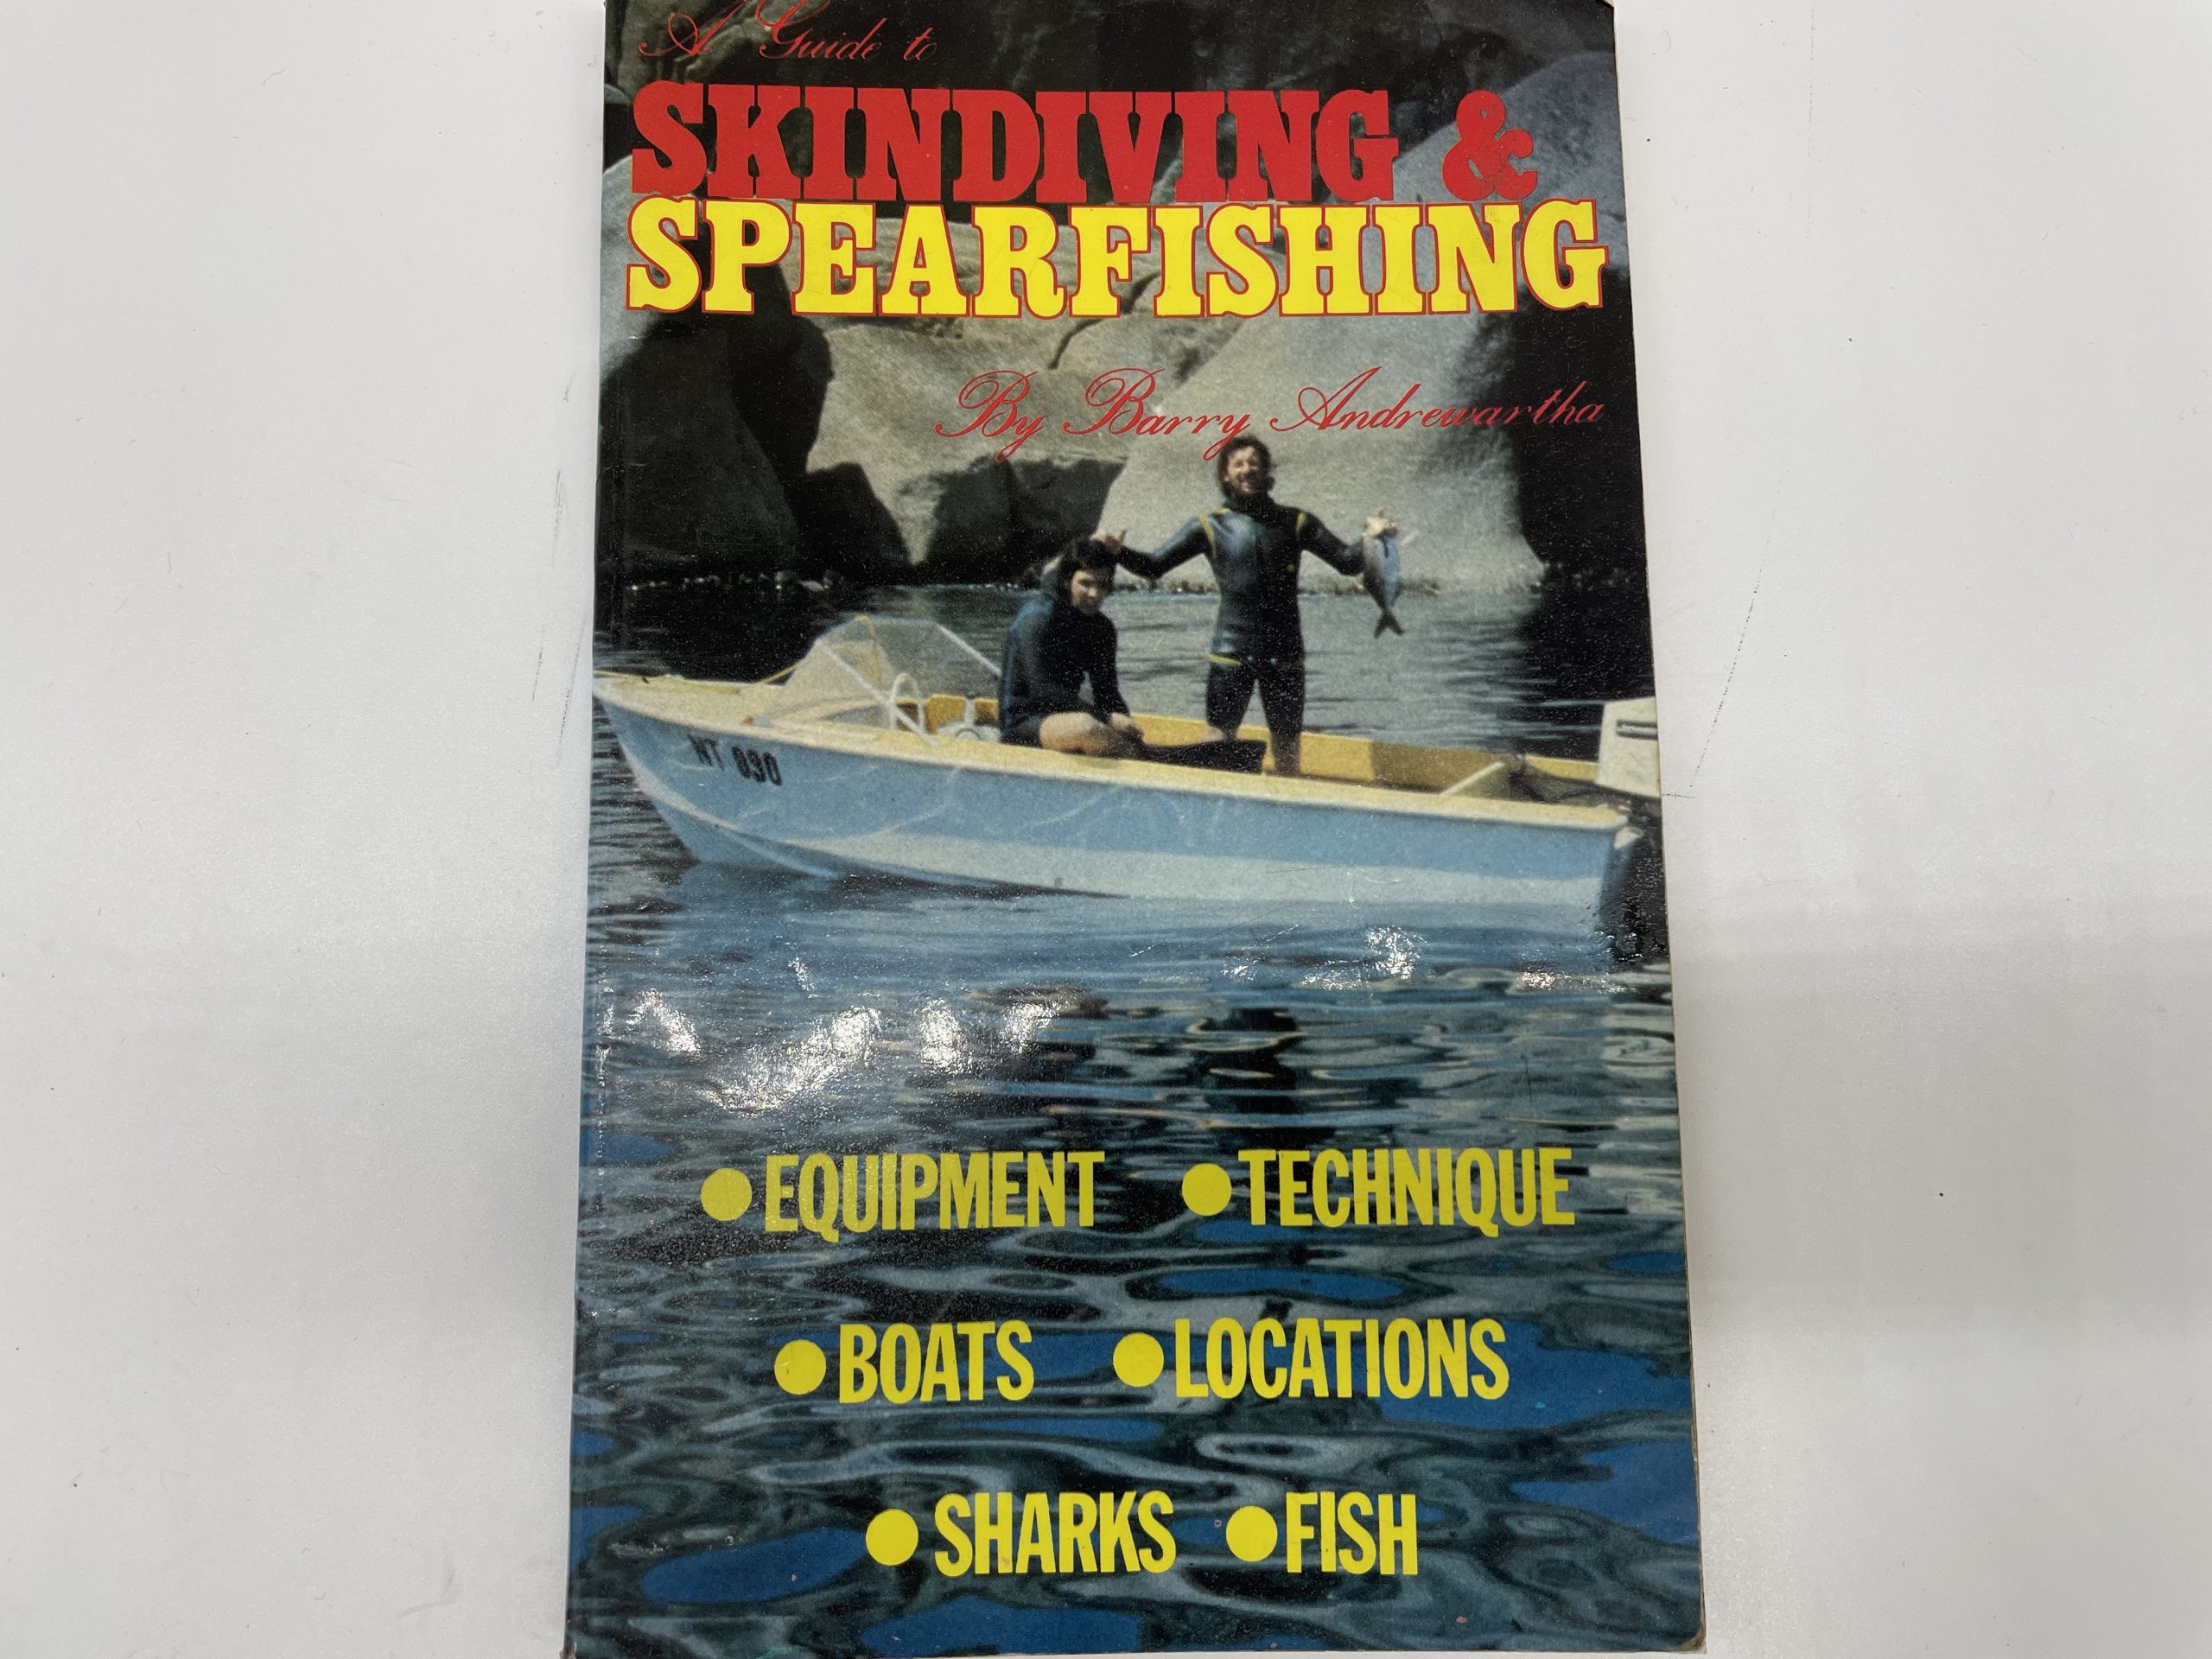 Skindiving & Spearfishing